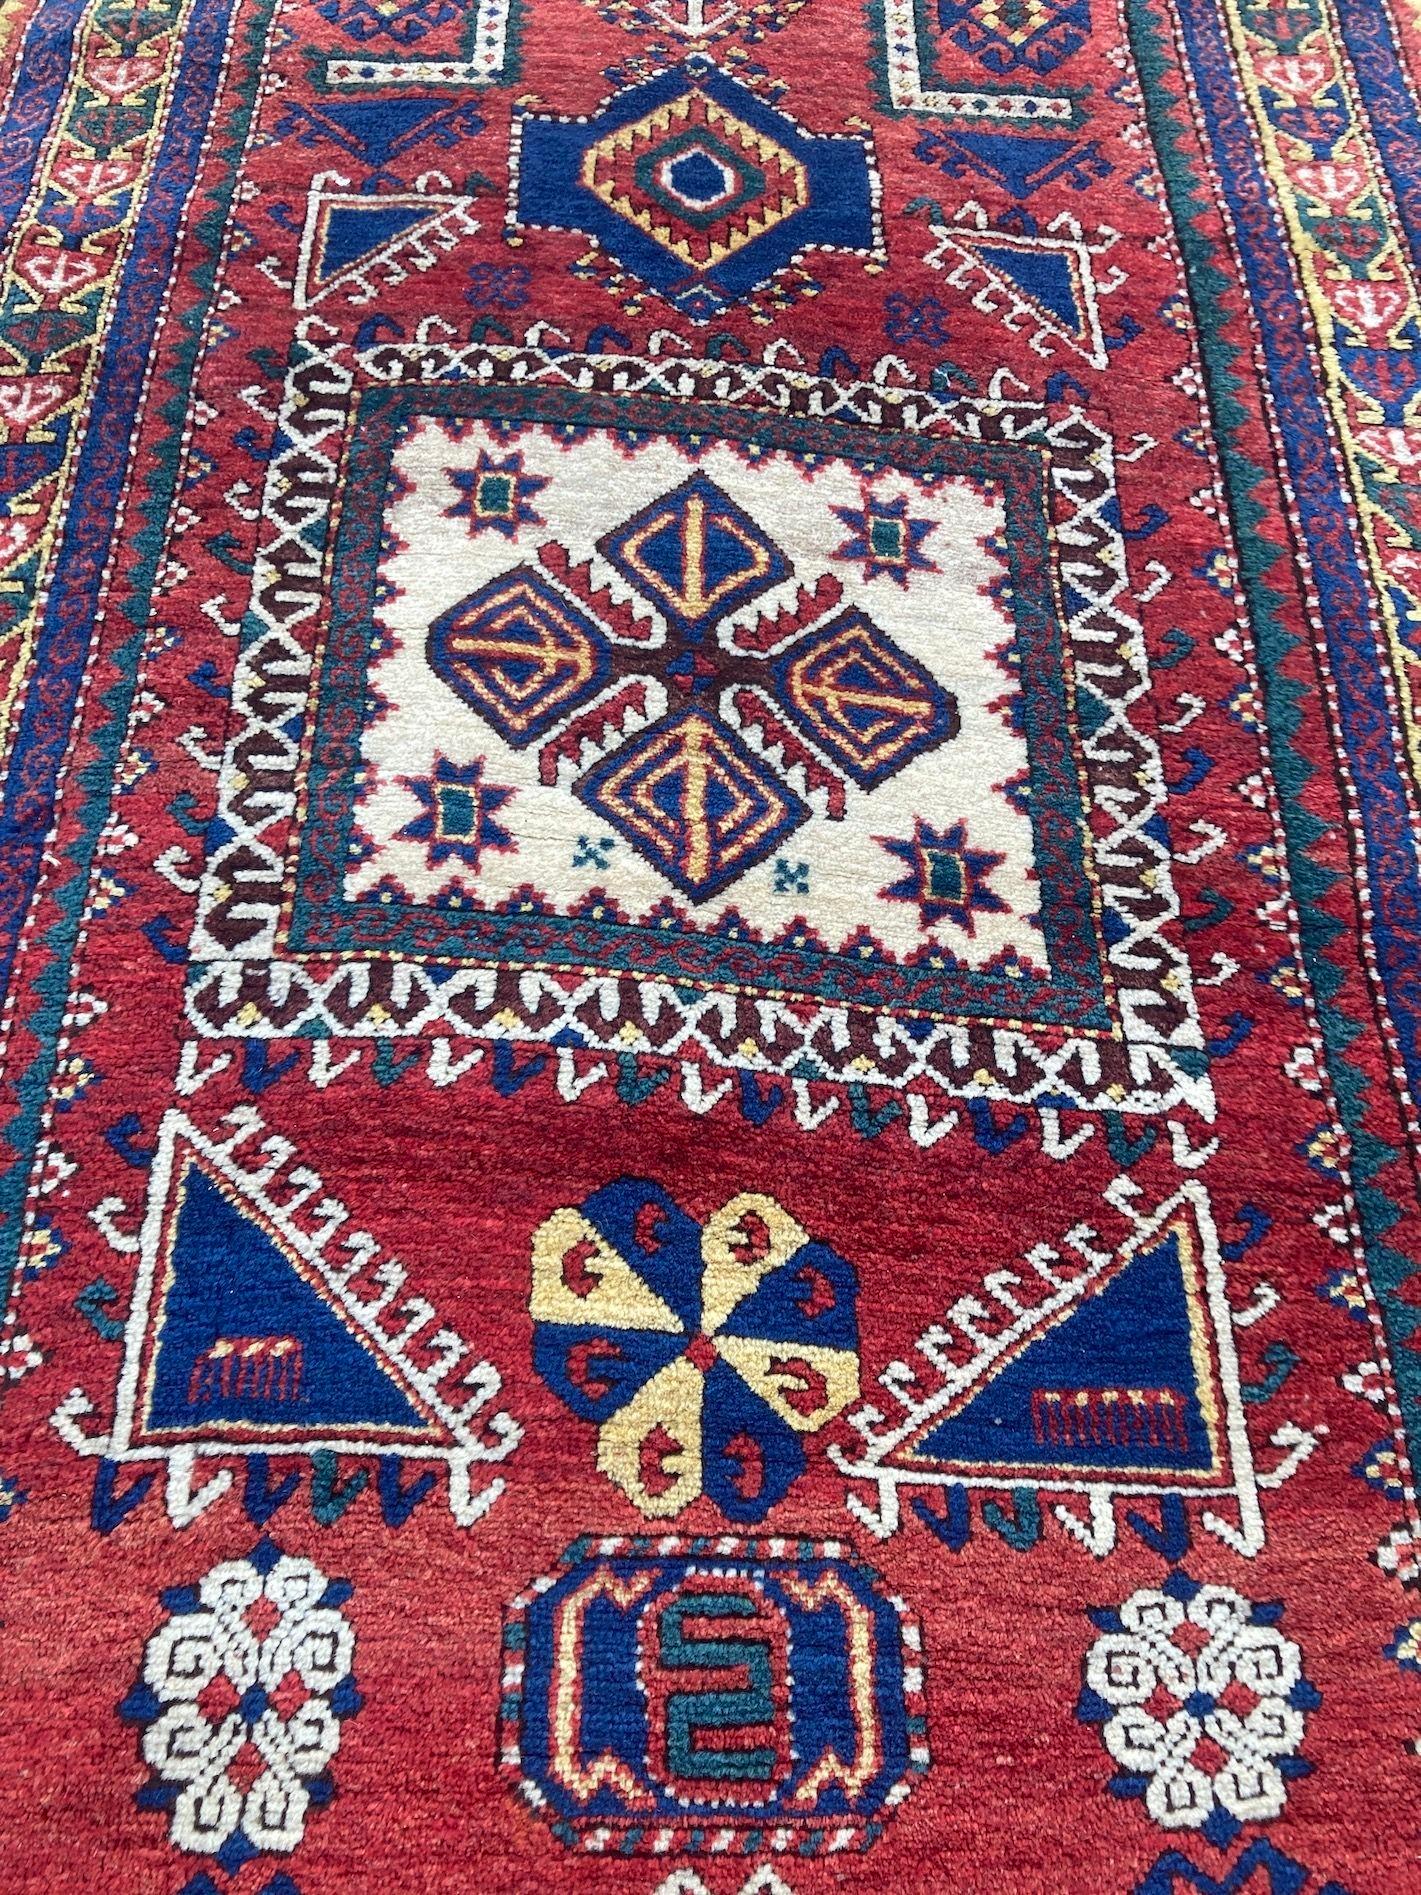 Antique Caucasian Fachralo Kazak Prayer Rug 2.48m x 1.30m For Sale 2